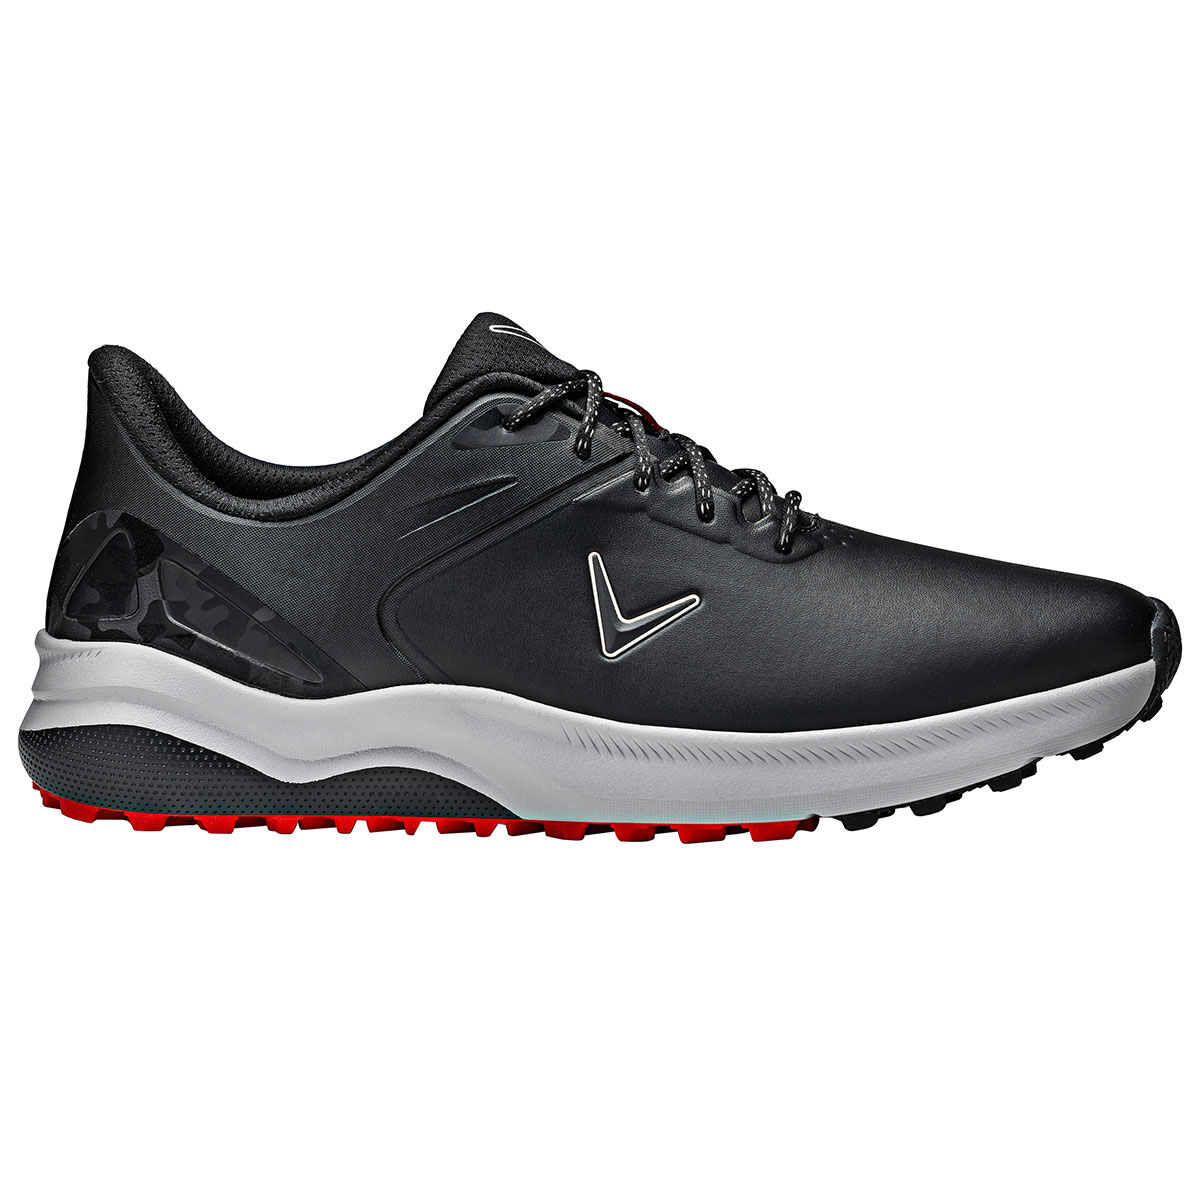 Callaway Golf Mens Black Waterproof Lazer Spikeless Golf Shoes, Size: 10 | American Golf von Callaway Golf